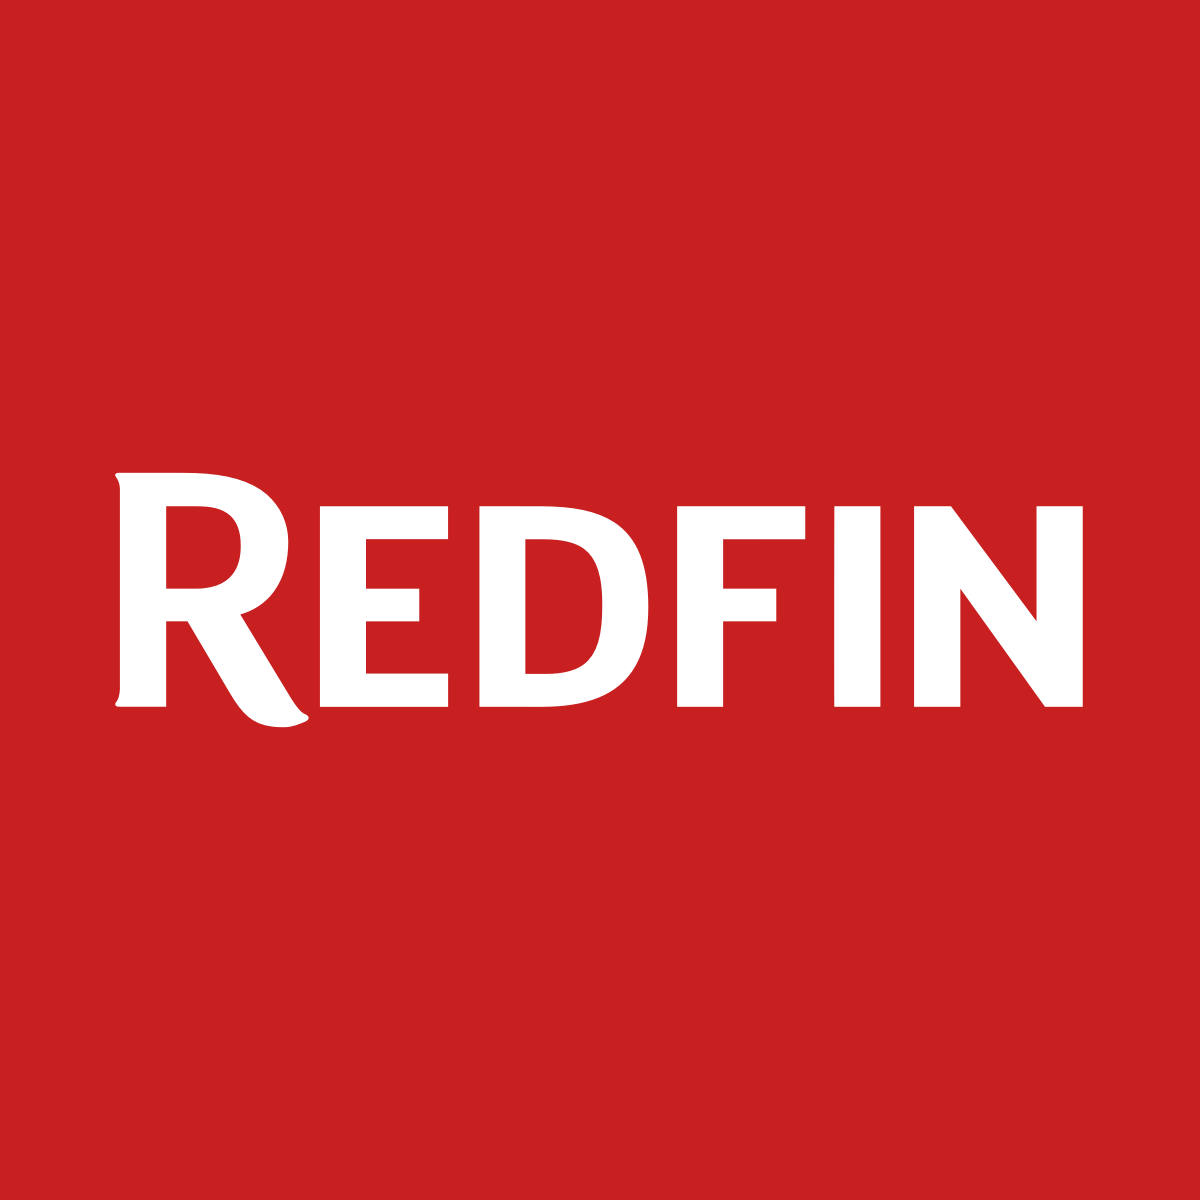 RDFN logo